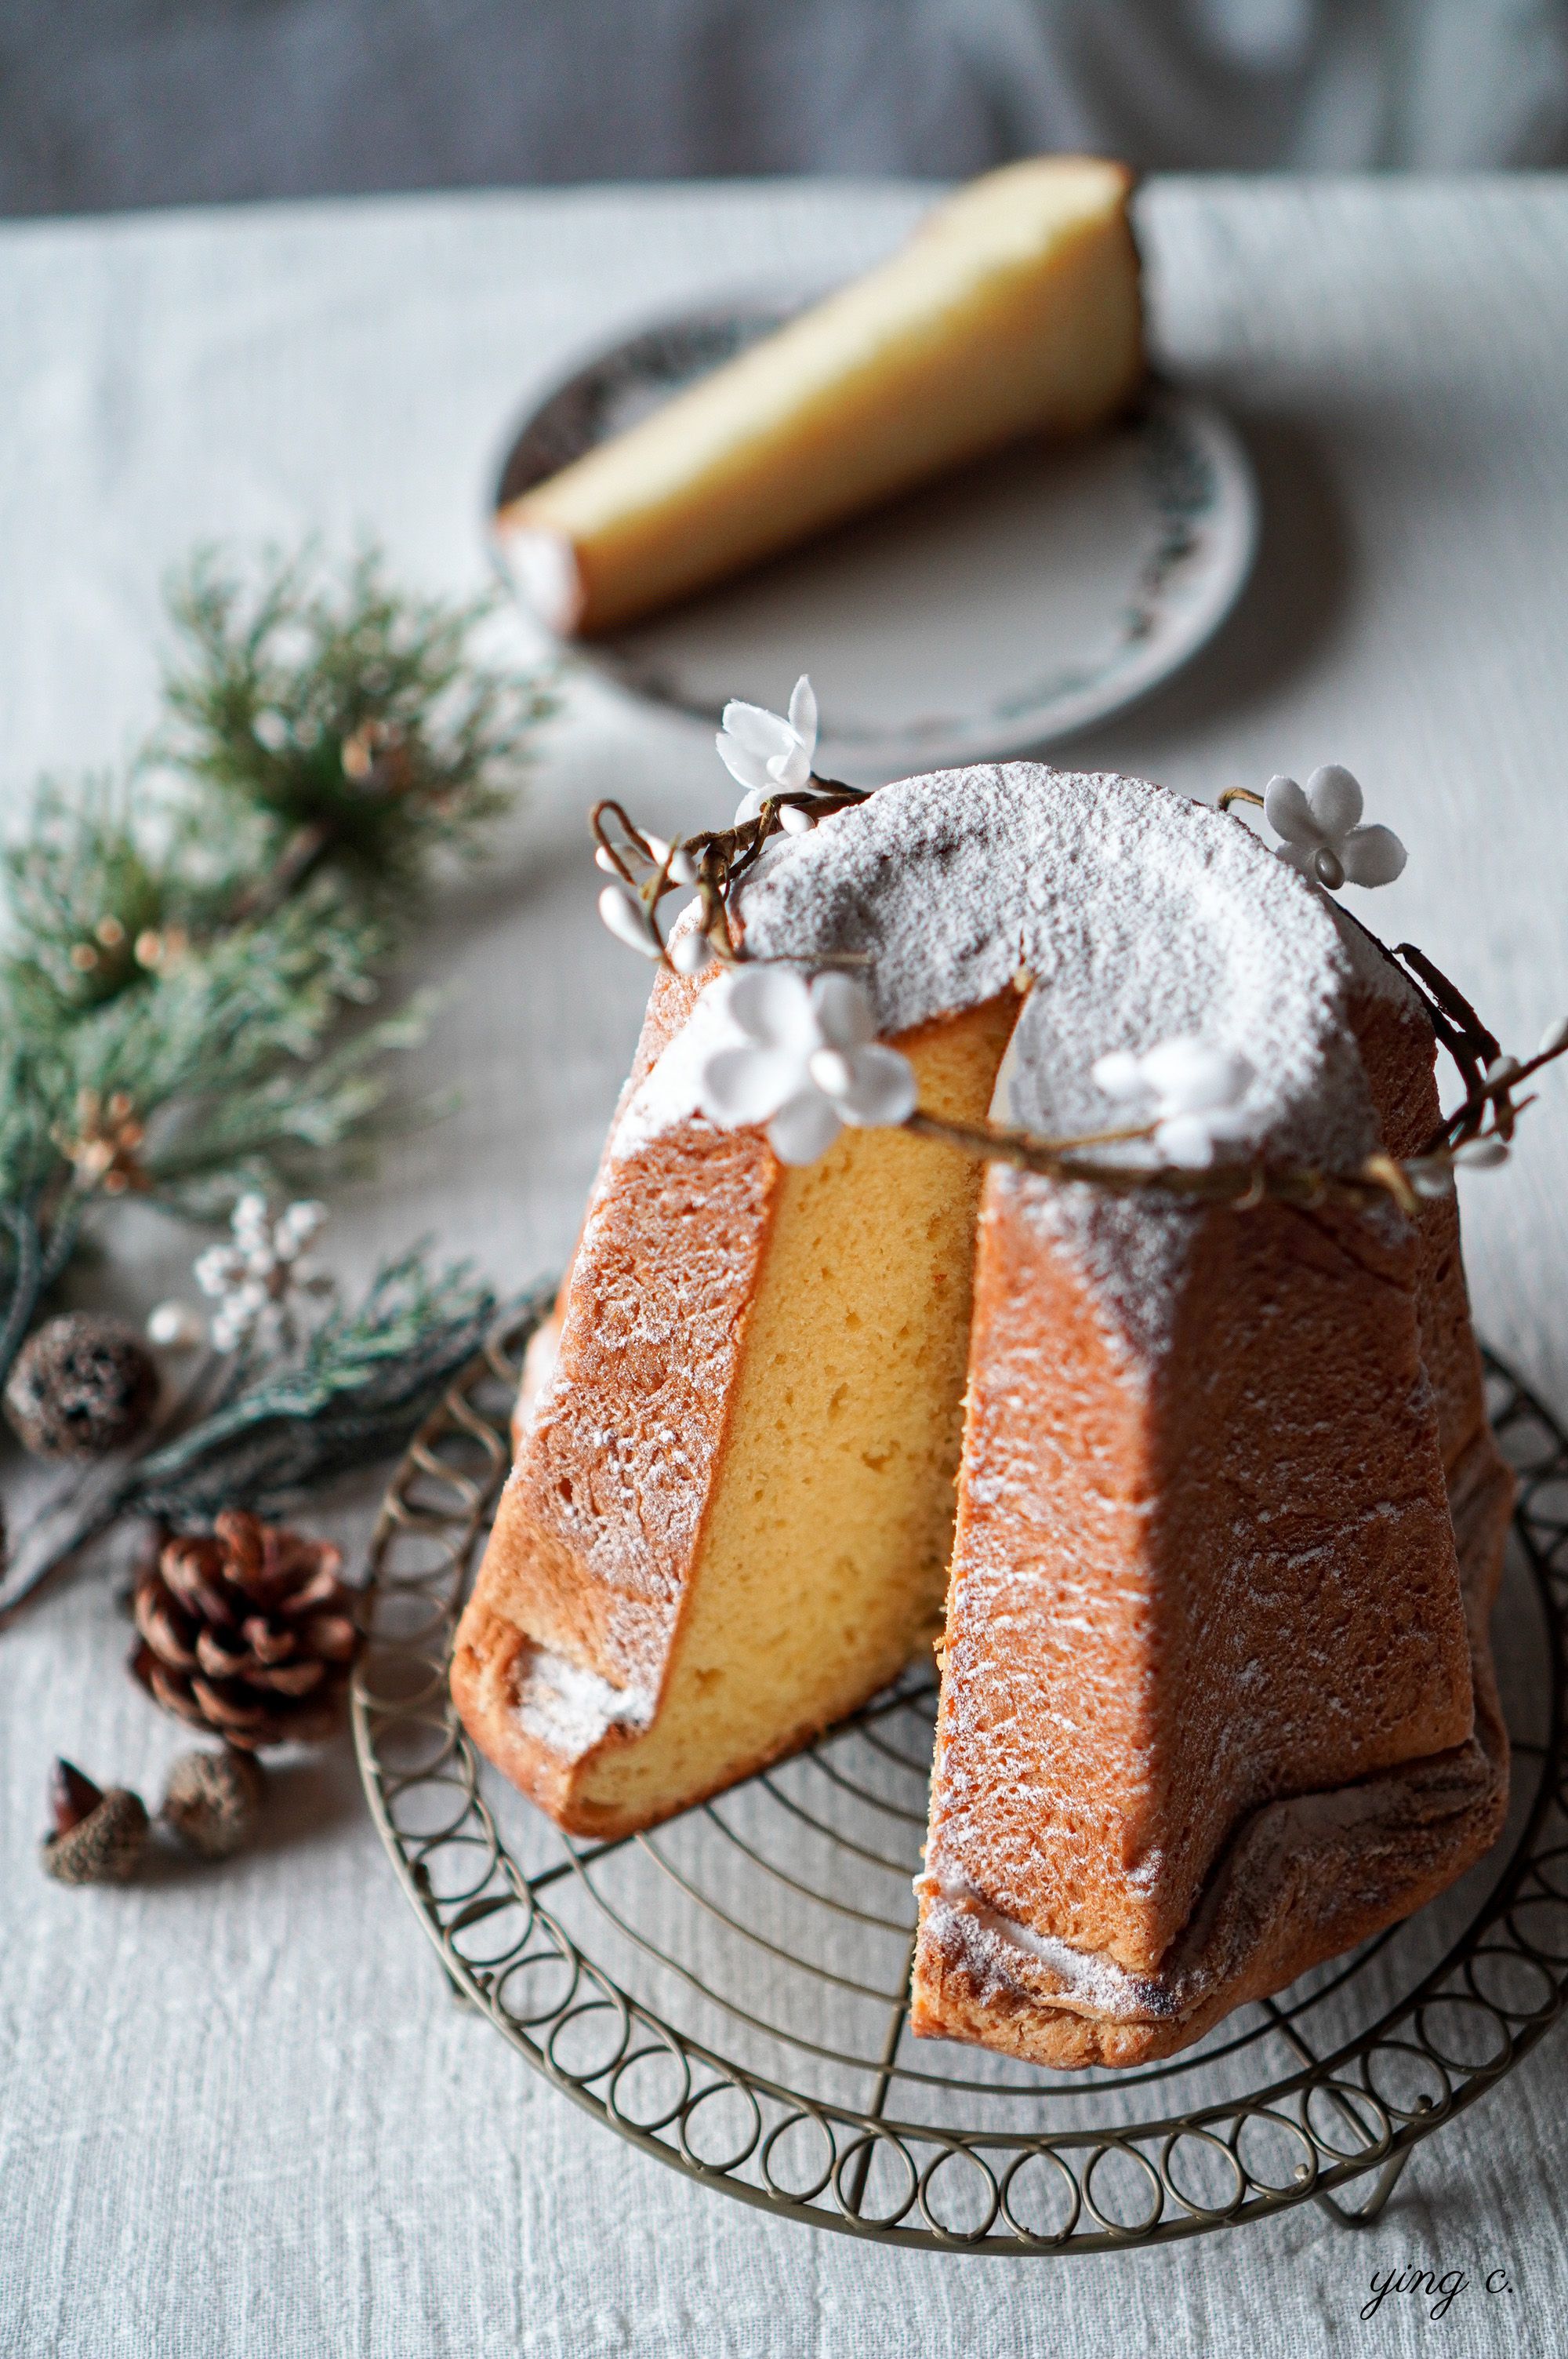 潘多洛黃金麵包使用了大量奶油、蛋，並以蜂蜜取代部分砂糖，顏色金黃、在奶油的馥郁中帶著蜂蜜的清香。由於使用特殊八角星型模，並灑上大量糖粉，外型宛如義大利北面覆雪的山峰，在聖誕節品嚐別有風情。